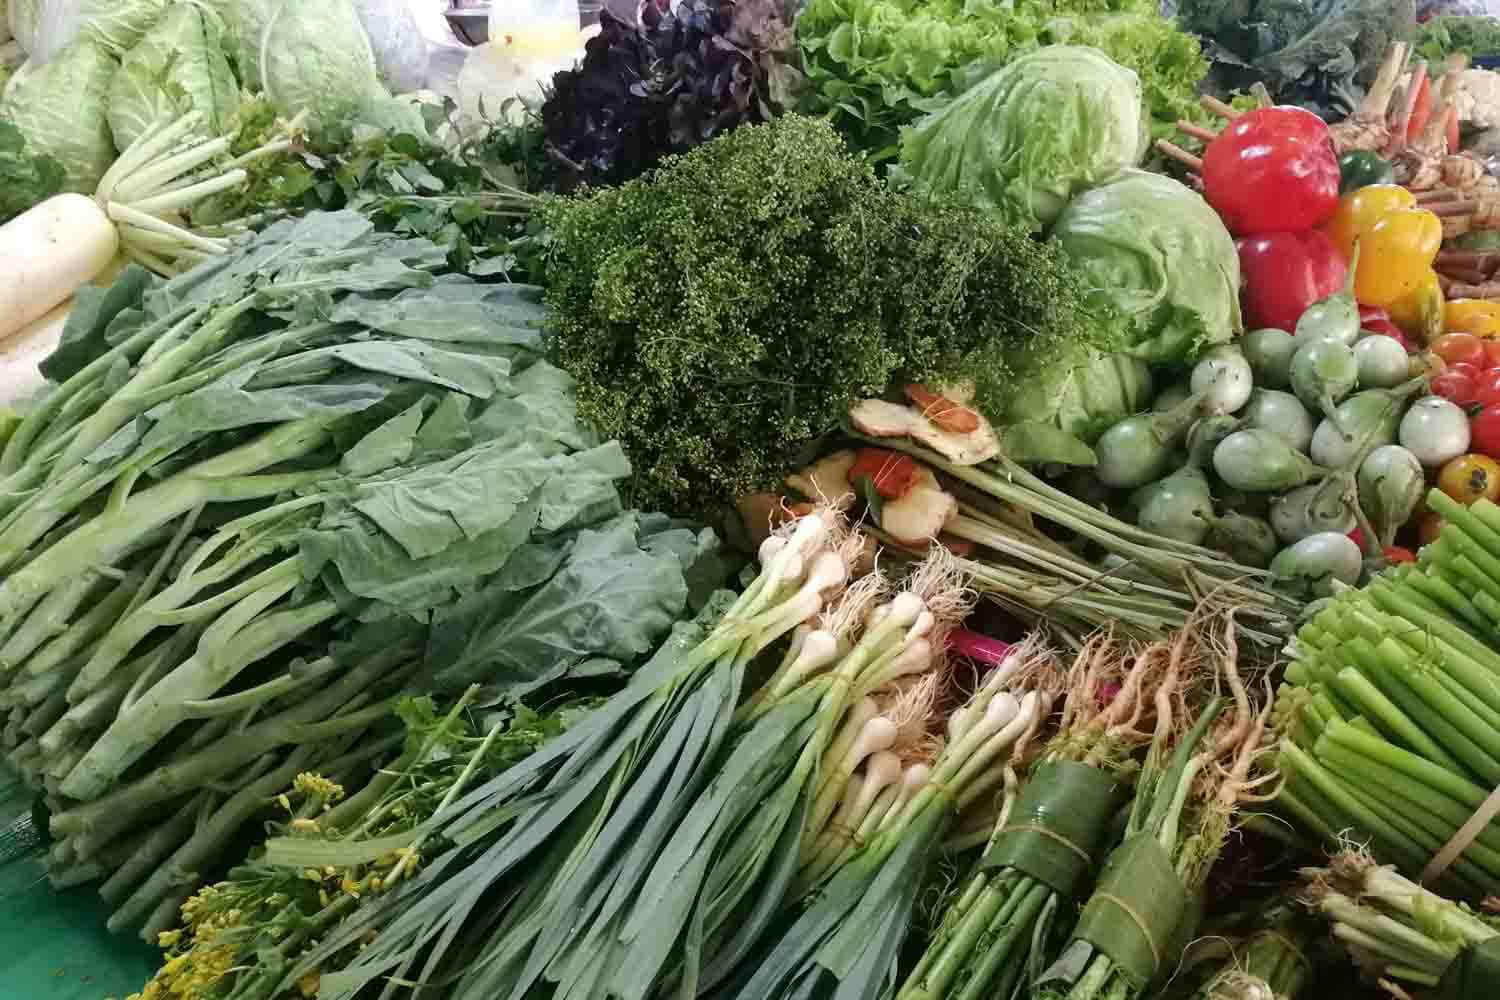 Gemüse auf dem Markt in Thailand